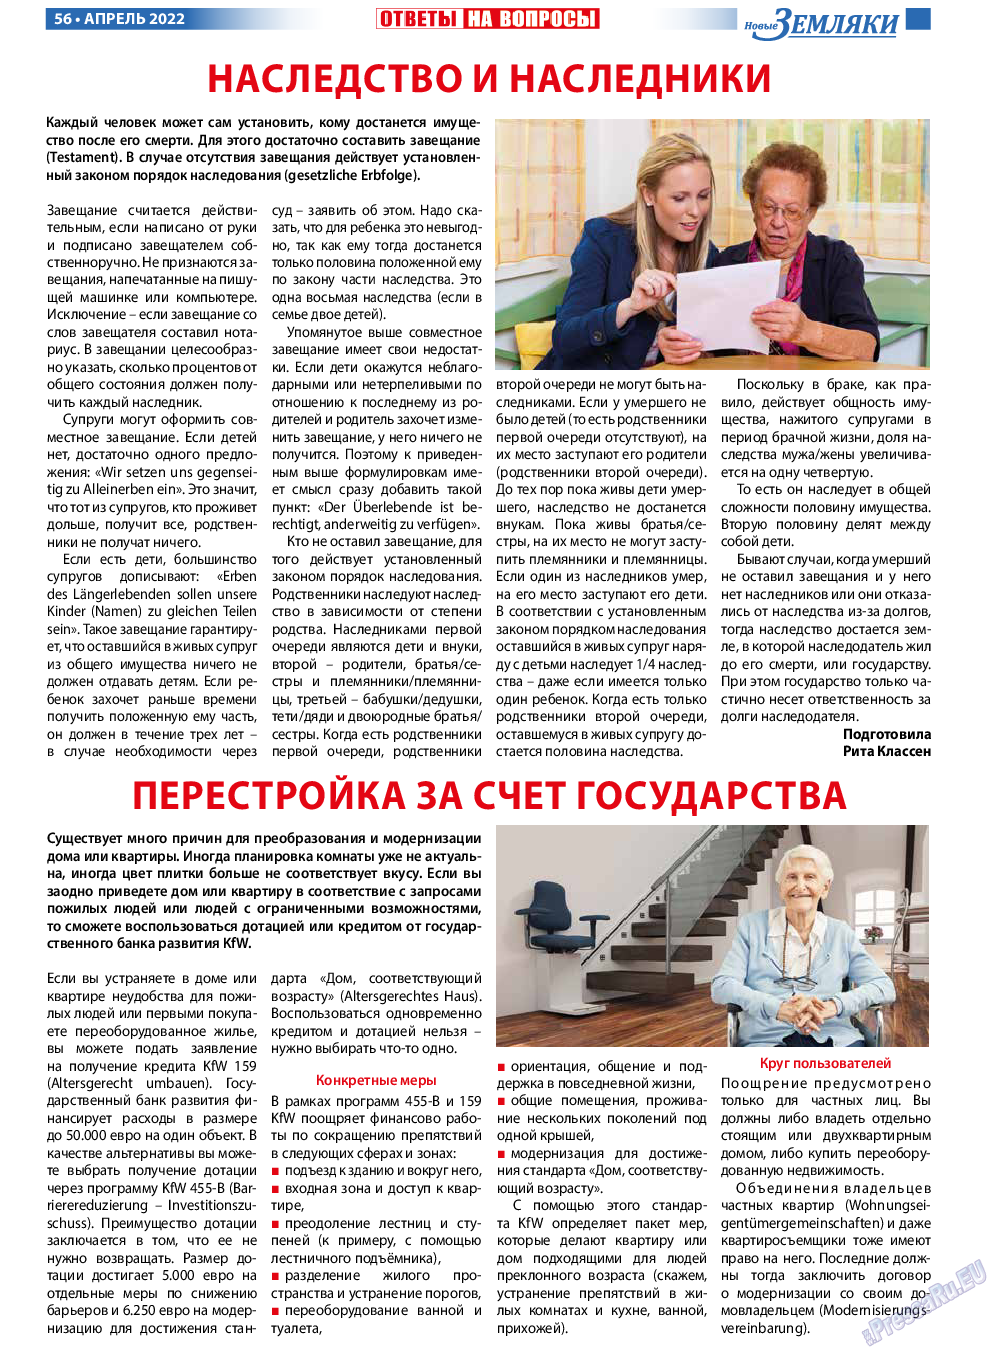 Новые Земляки, газета. 2022 №4 стр.56